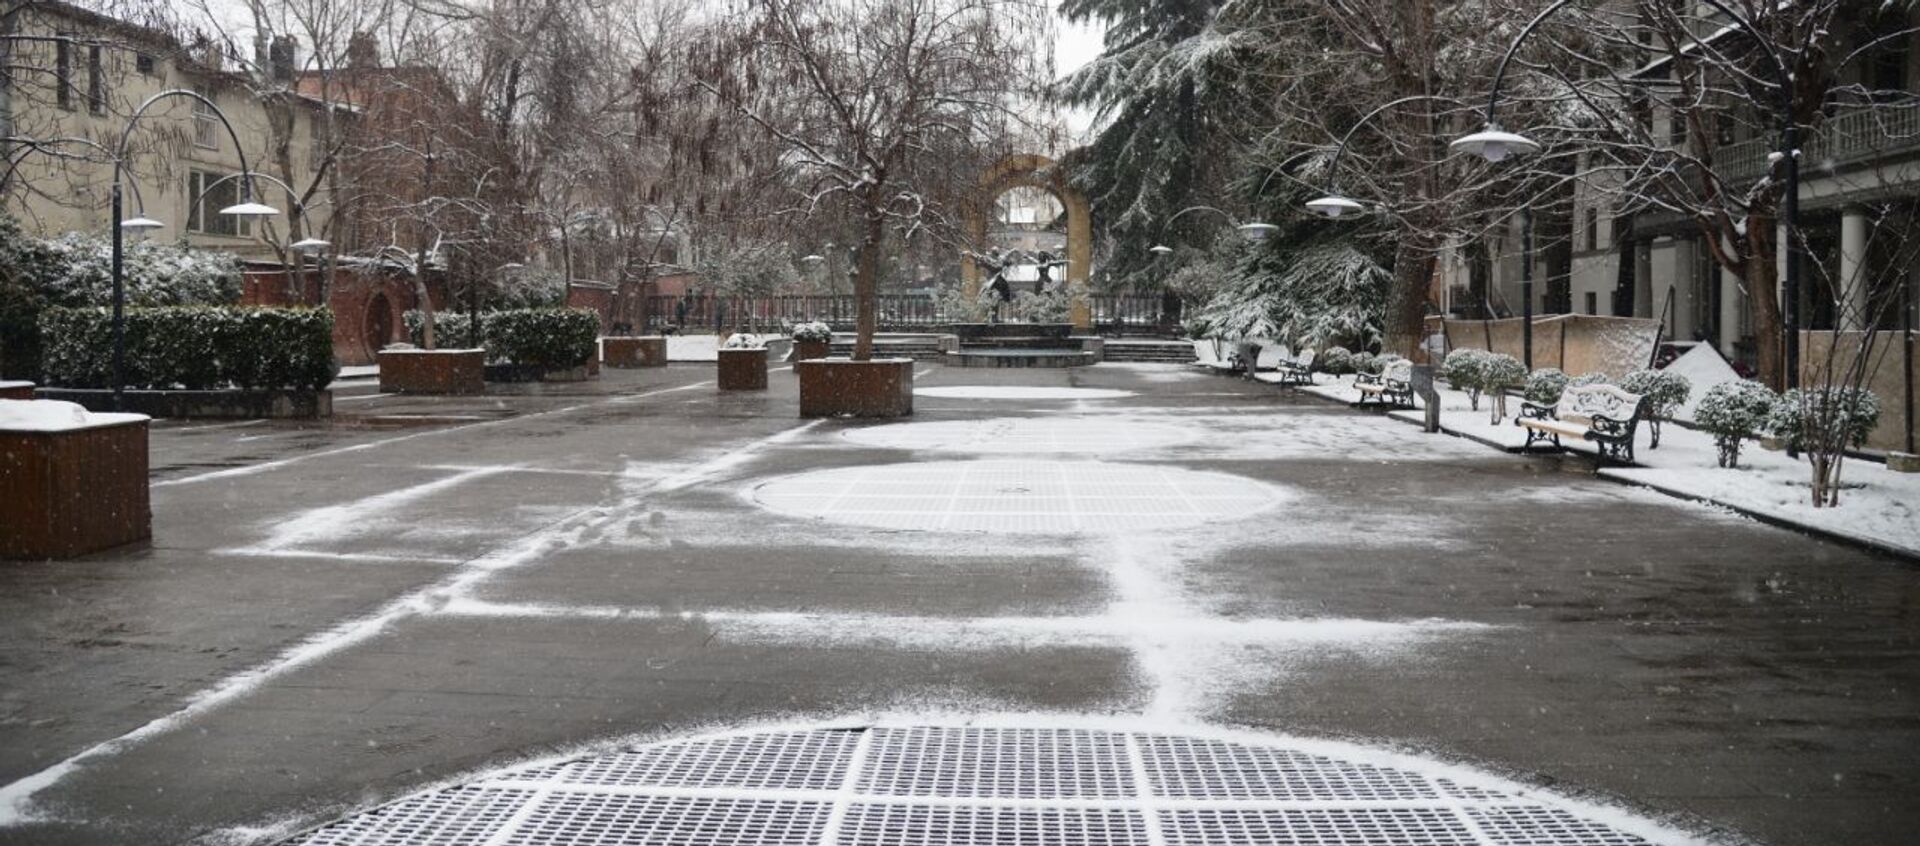 Один из парков Тбилиси на проспекте Агмашенебели в снежную погоду - Sputnik Грузия, 1920, 23.02.2021